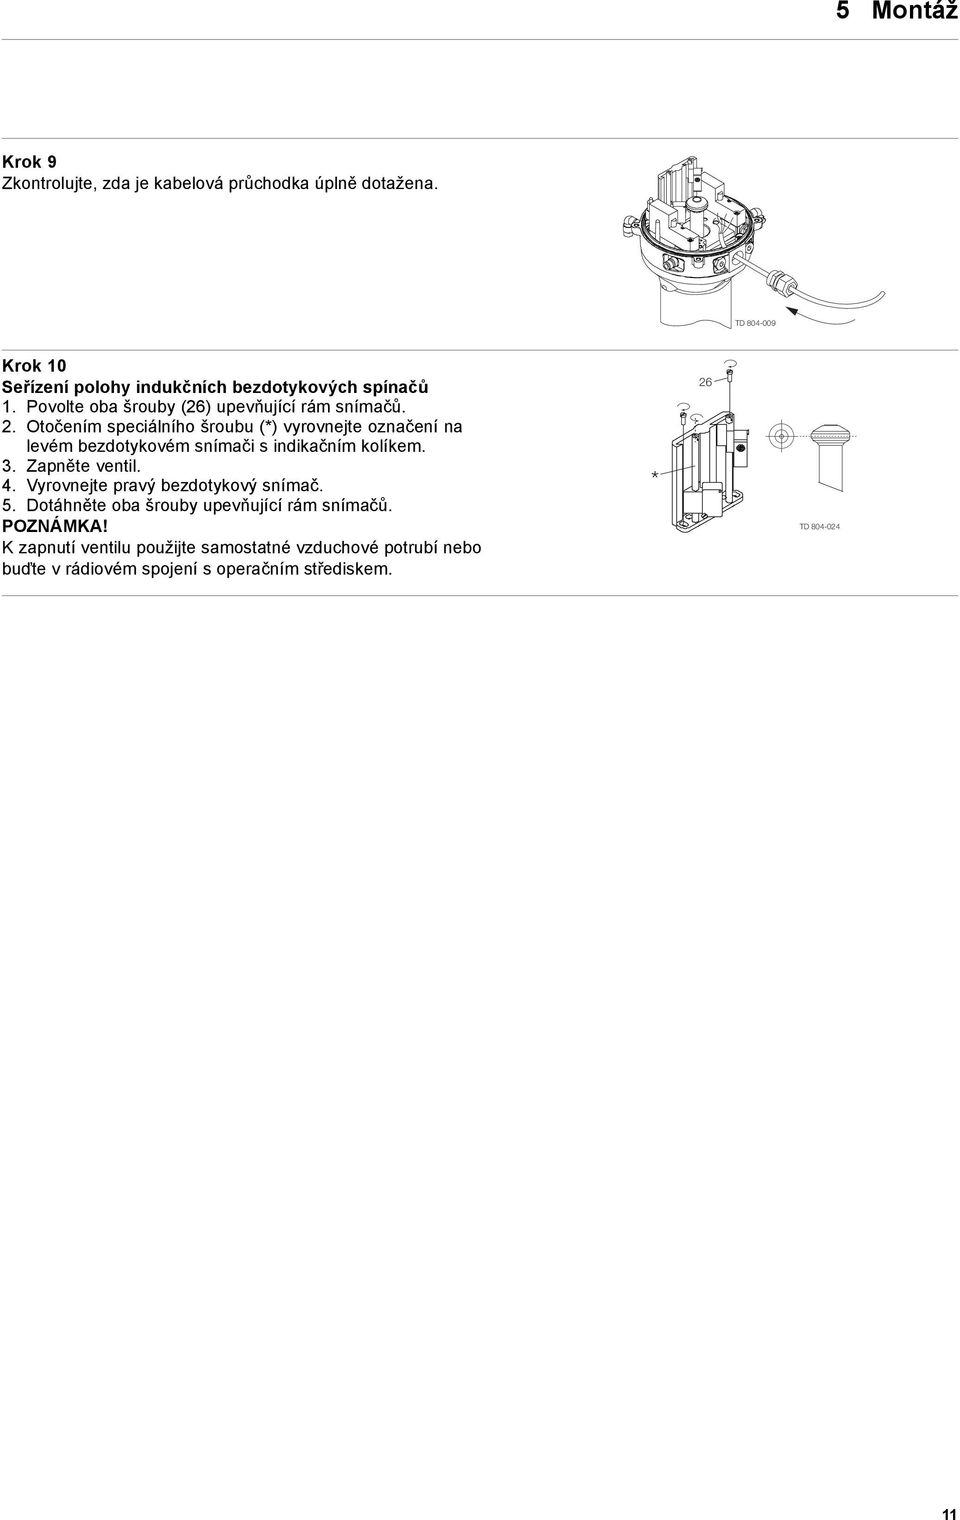 Otočením speciálního šroubu (*) vyrovnejte označení na levém bezdotykovém snímači sindikačním kolíkem. 3. Zapněte ventil. 4.